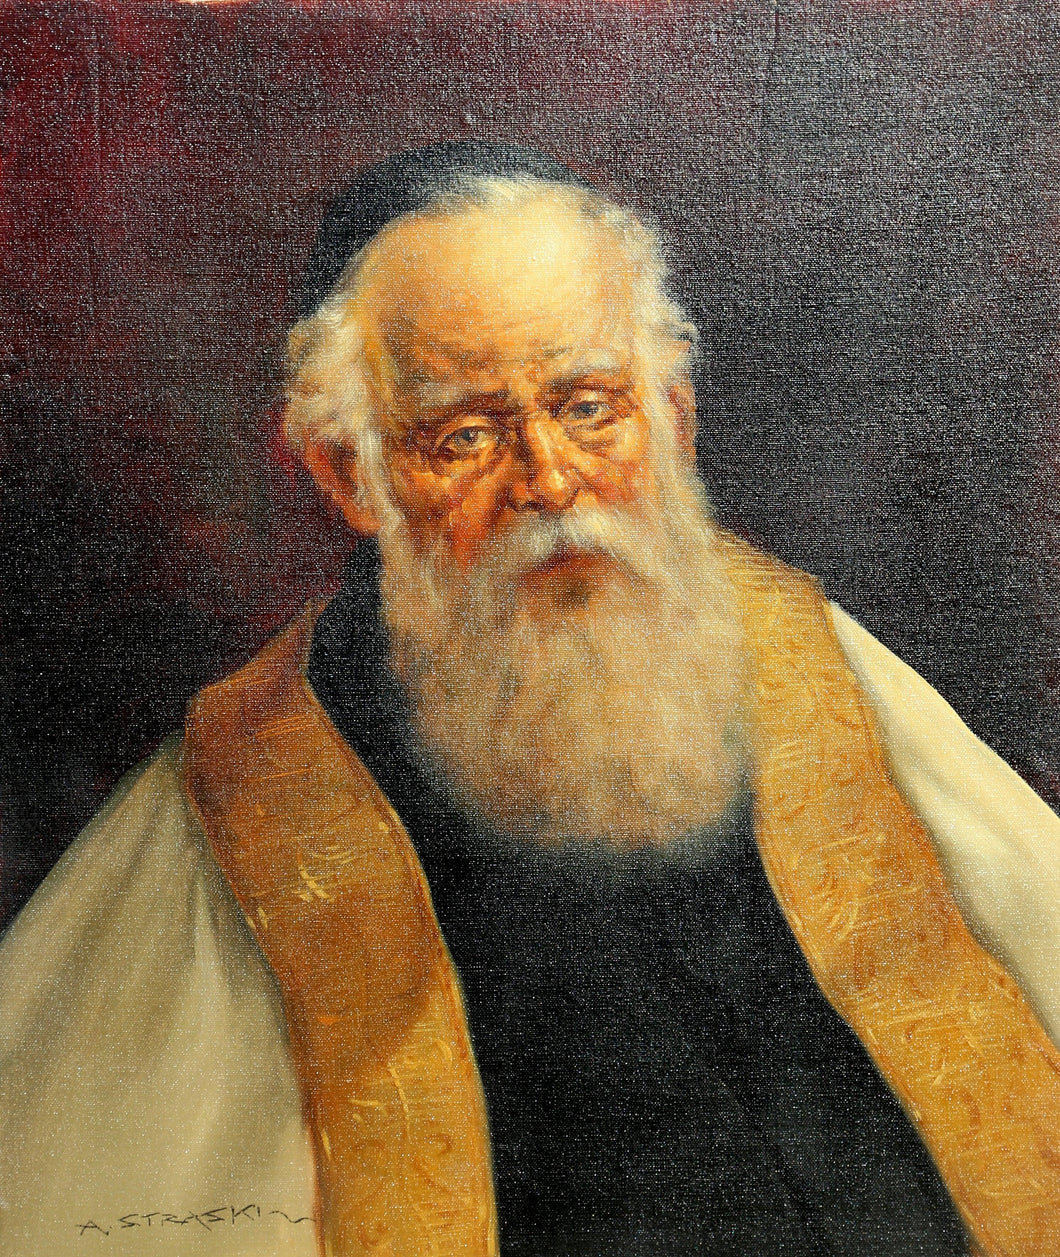 Rabbi in Gold Robe II Oil | Abraham Straski,{{product.type}}